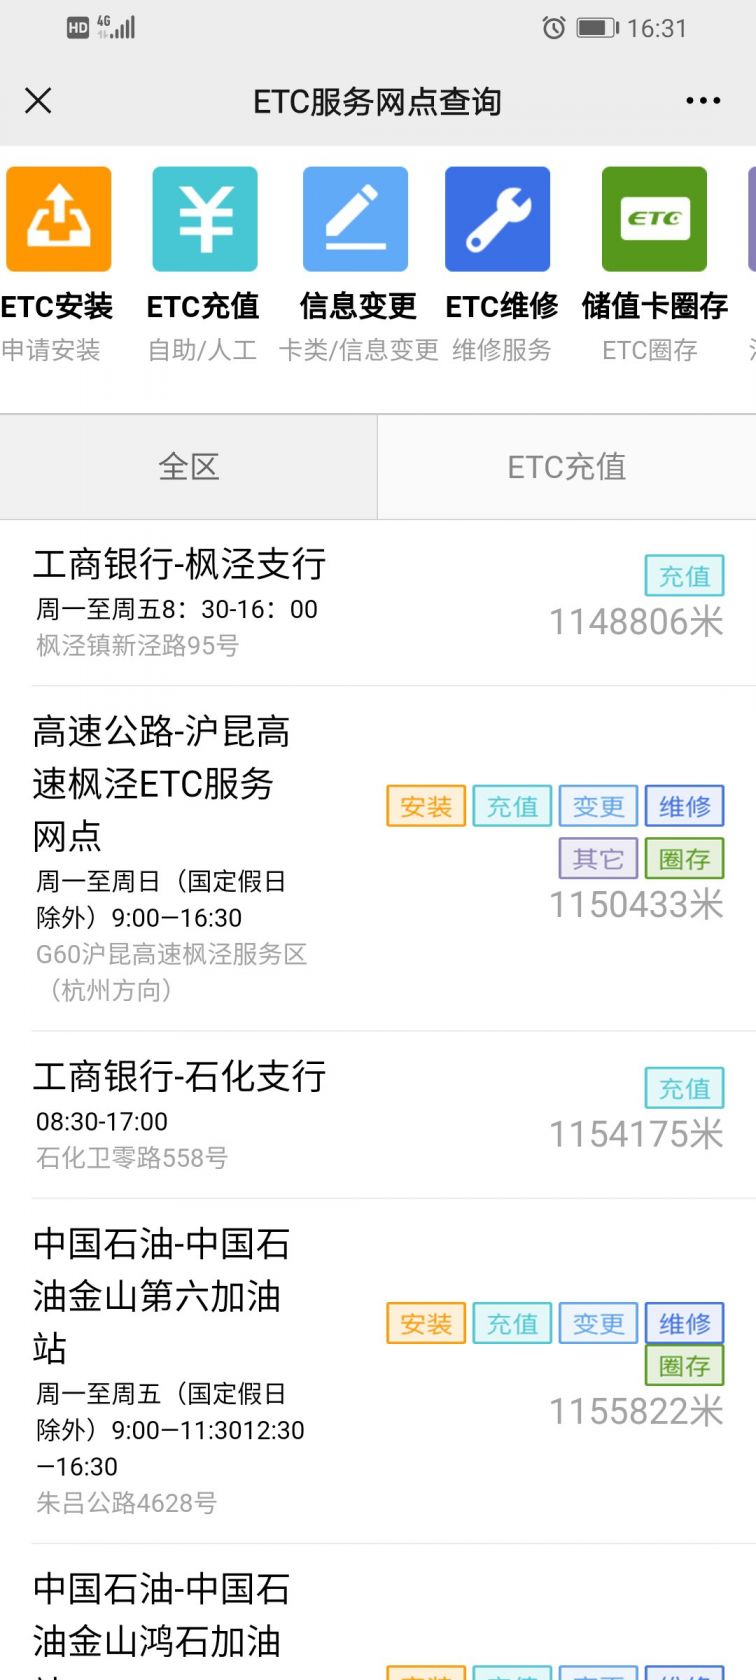 上海沪通卡ETC充值网点、网上充值方法